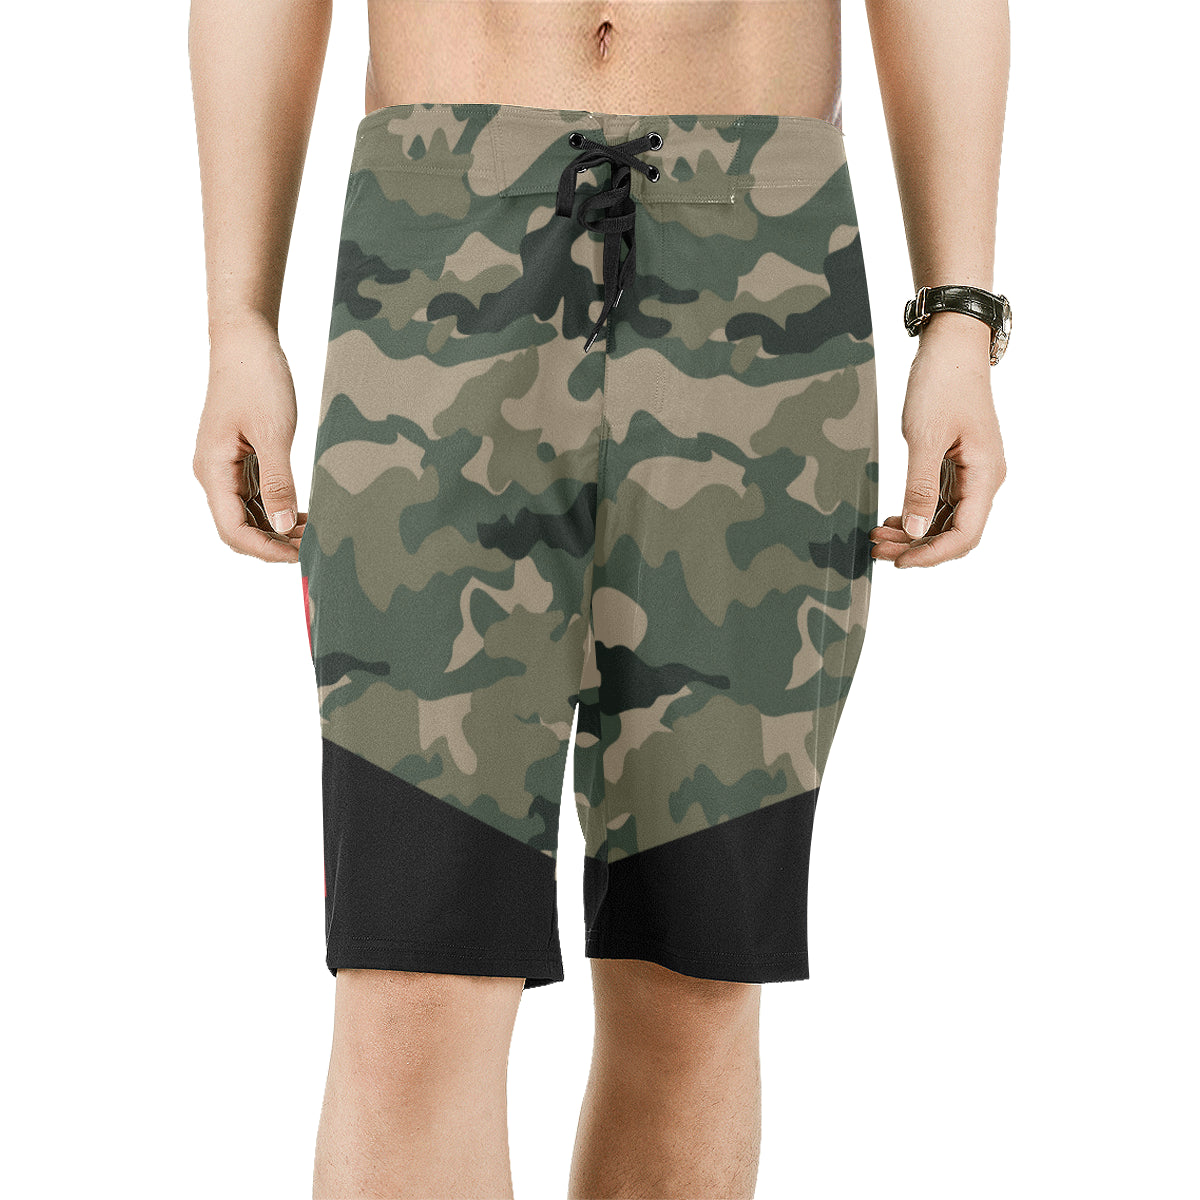 Guam Two-Tone Camo Men's All Over Print Board Shorts